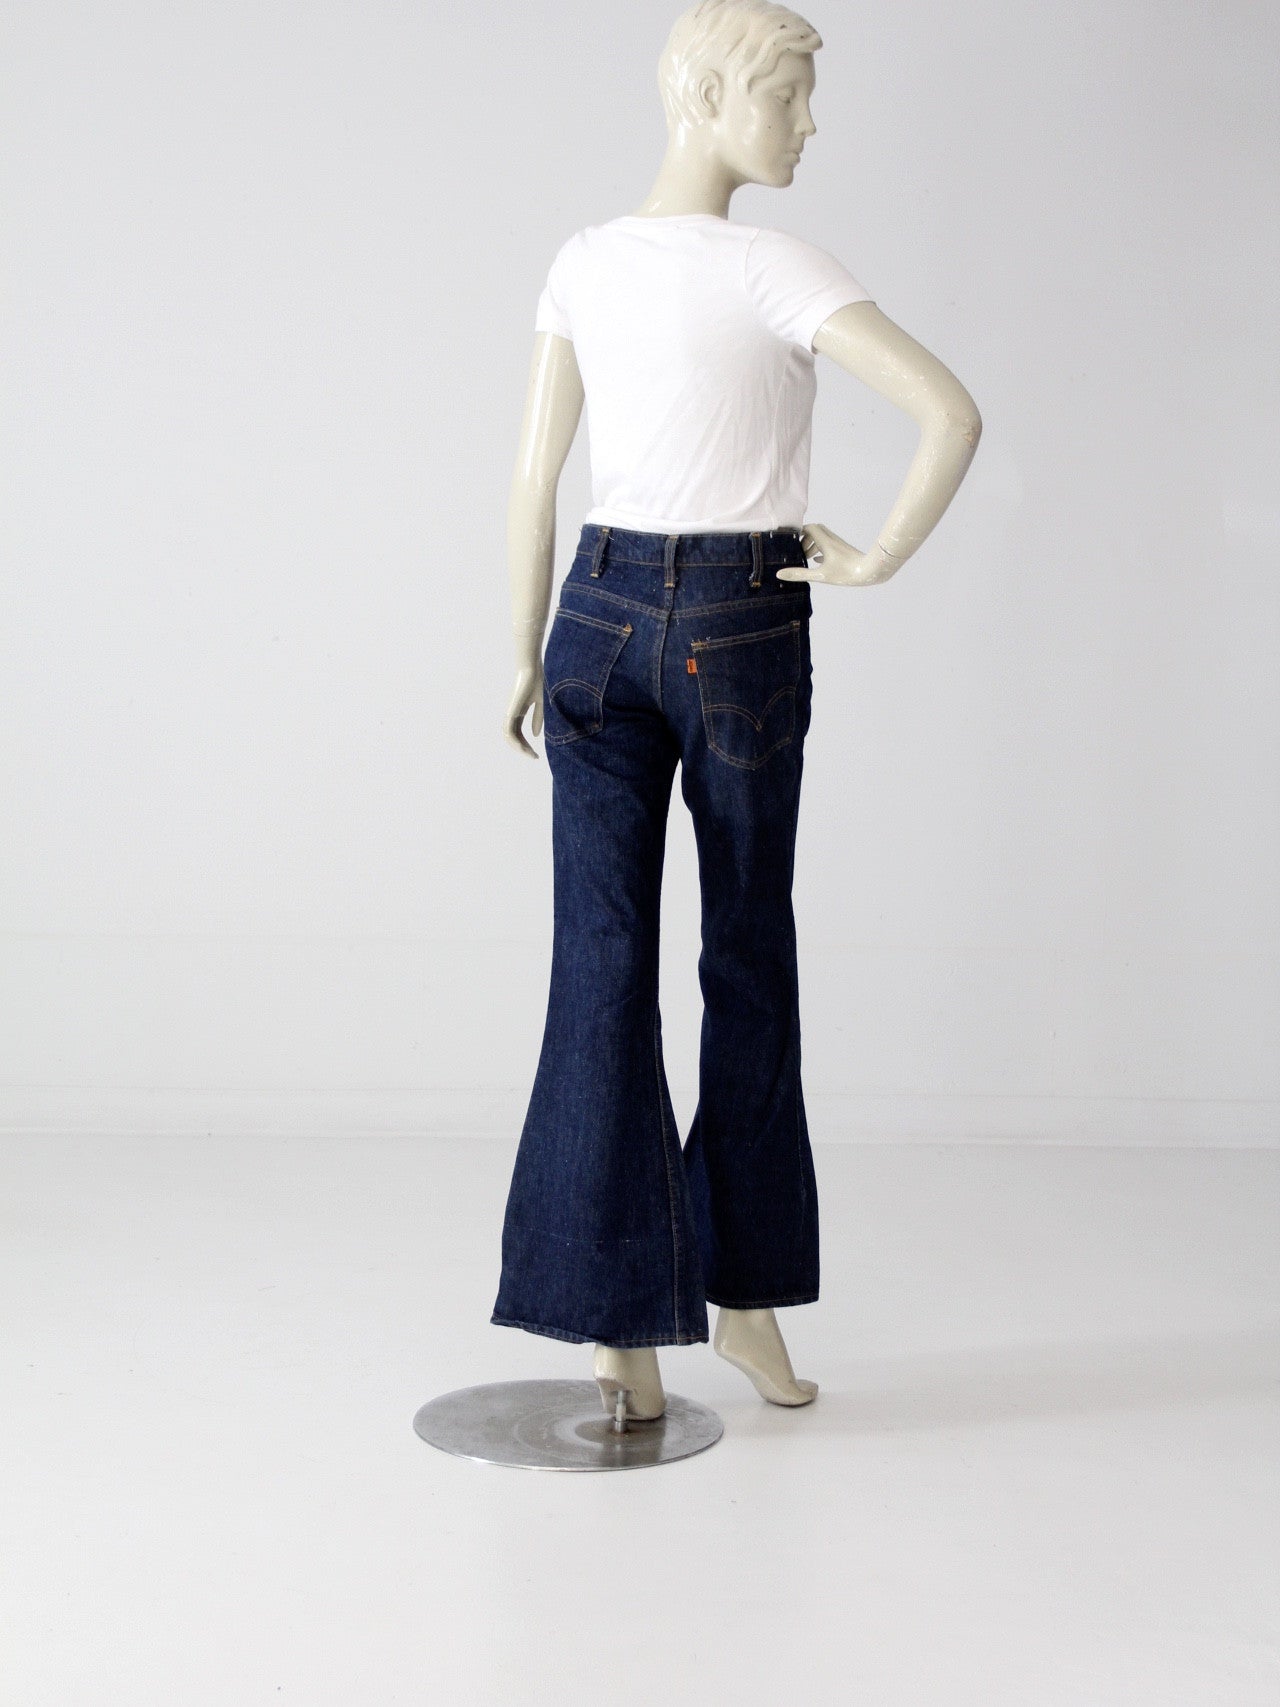 vintage Levis 684 denim bell bottom jeans, 30 x 31